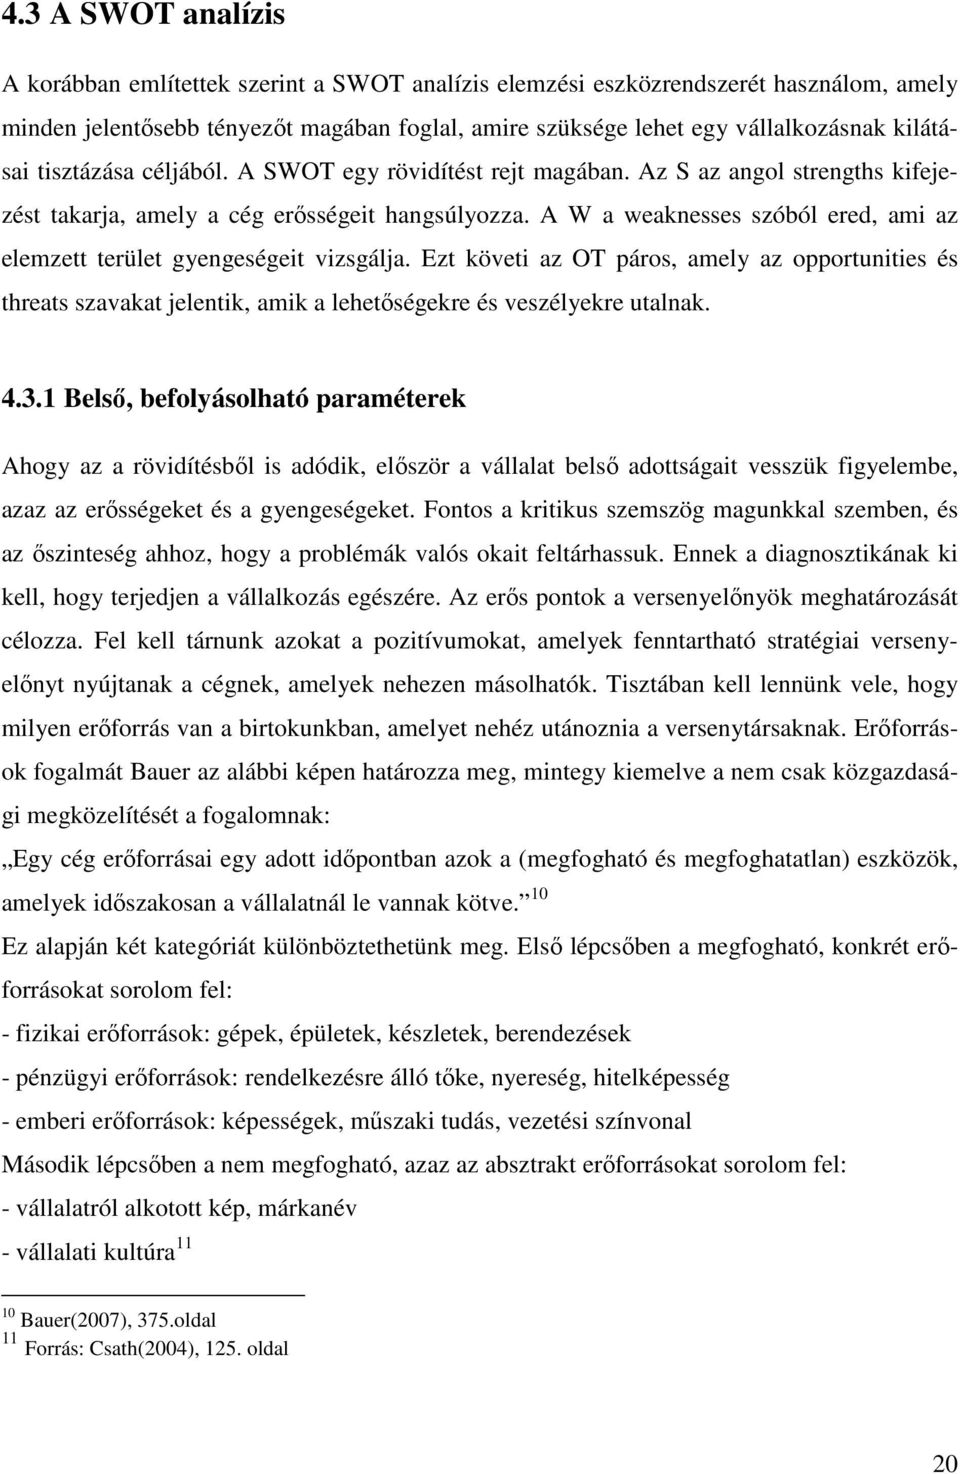 Üzleti tervezés a Kézsmárki Kft. szemszögéből - PDF Free Download